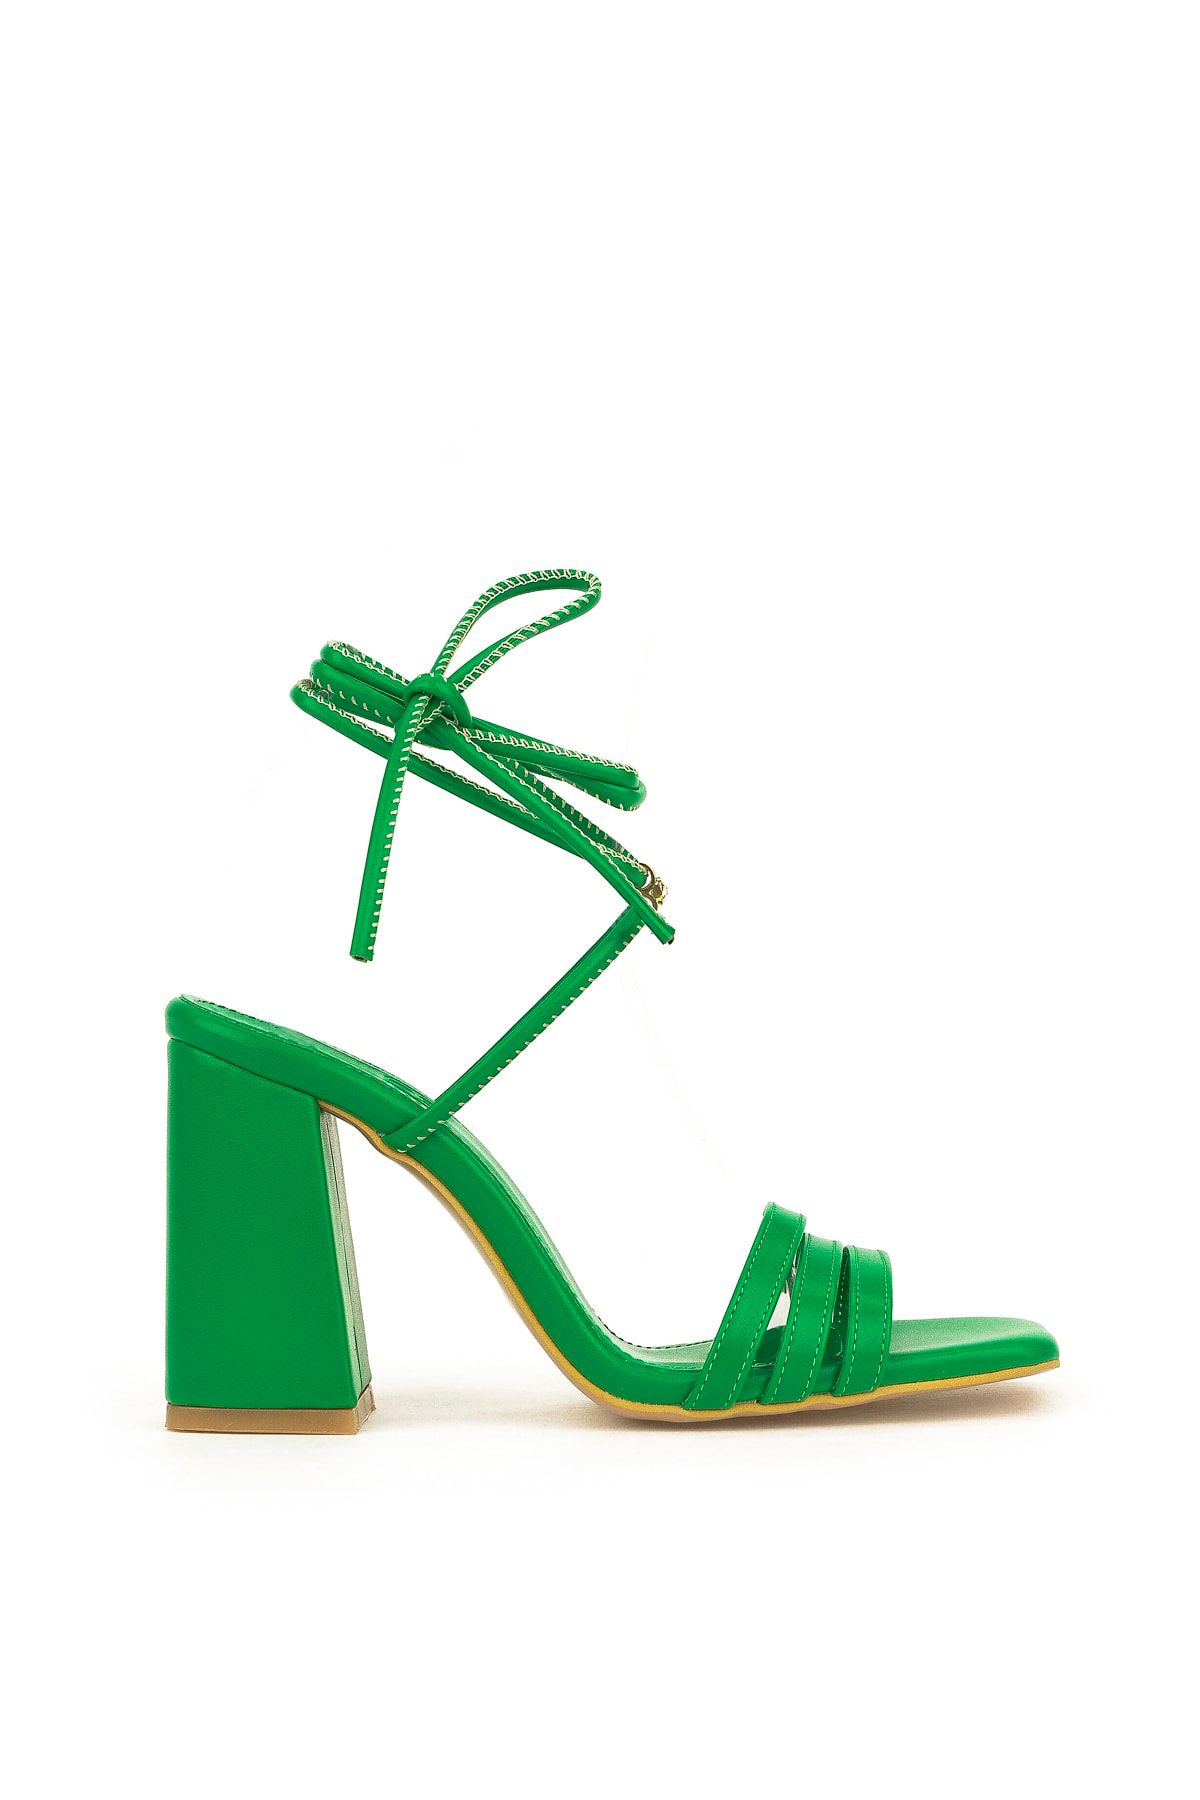 Ziya , Kadın Topuklu Sandalet 131996 346 Yeşil